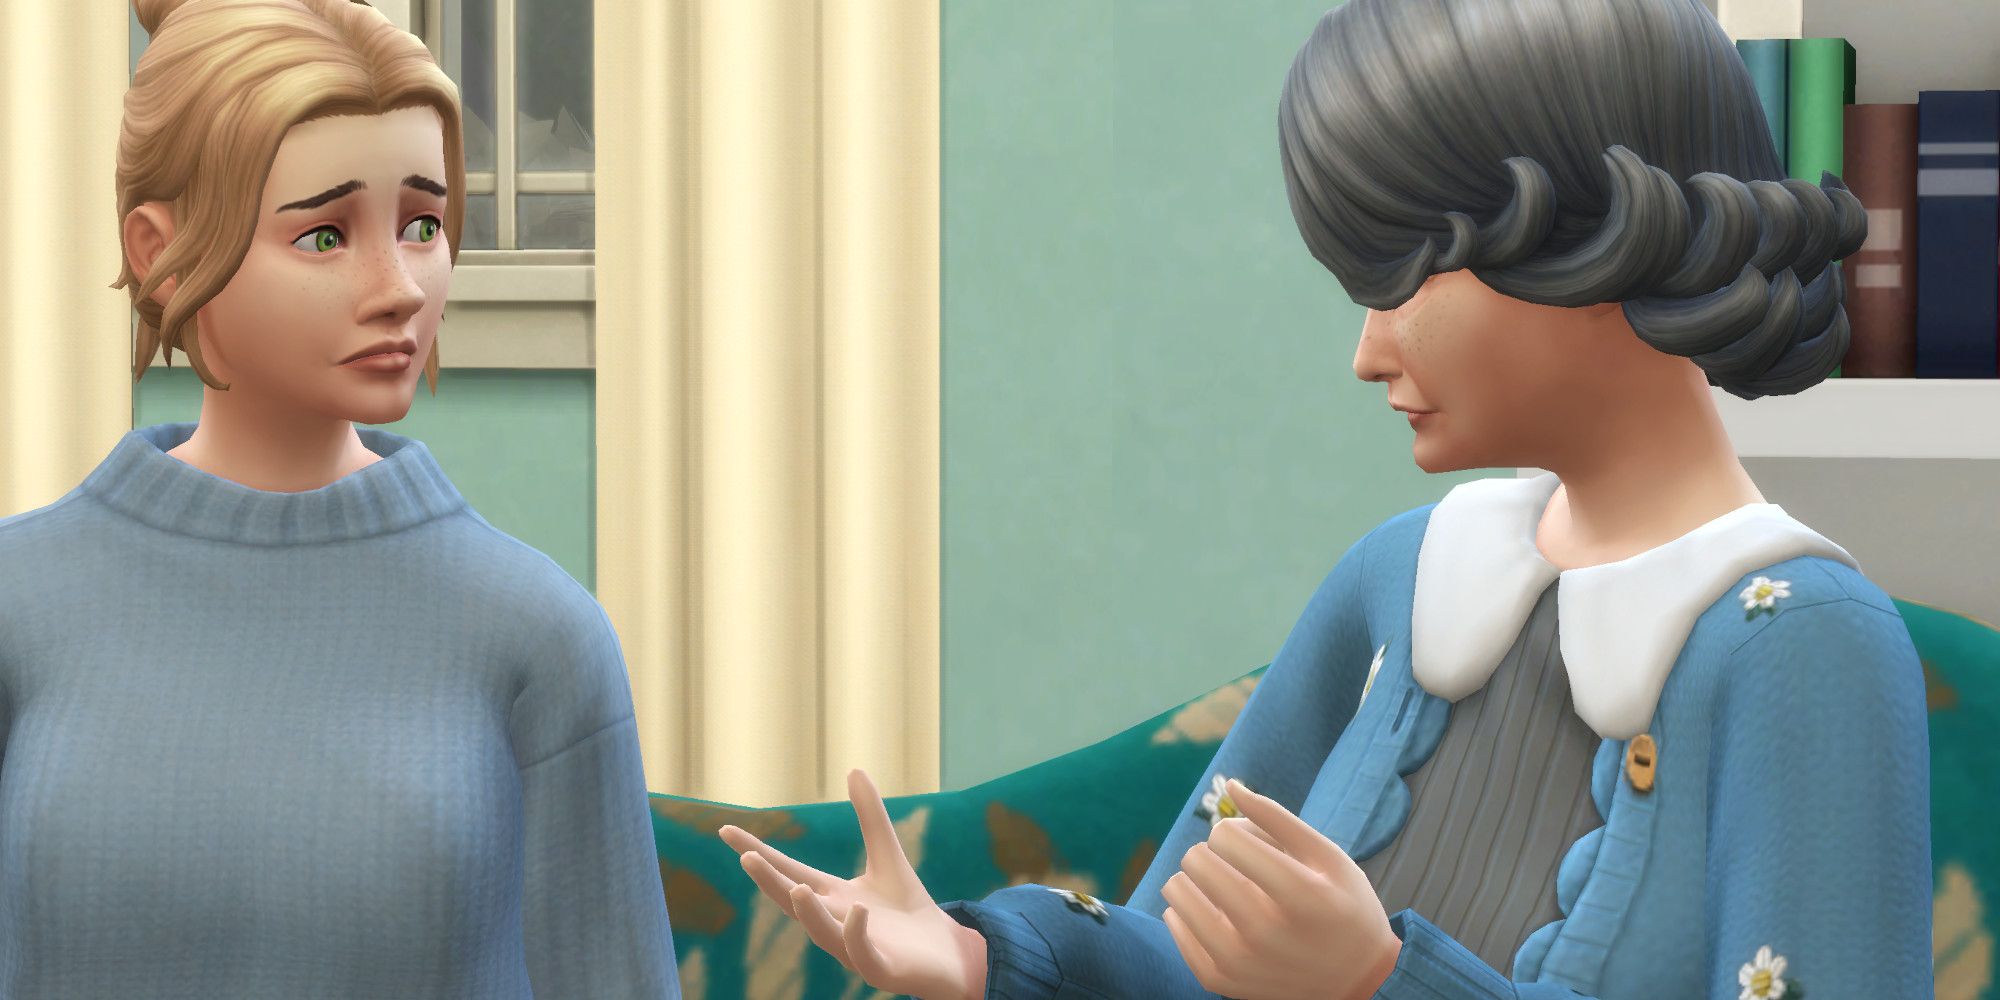 The Sim looks upset as the older Sim talks to them.